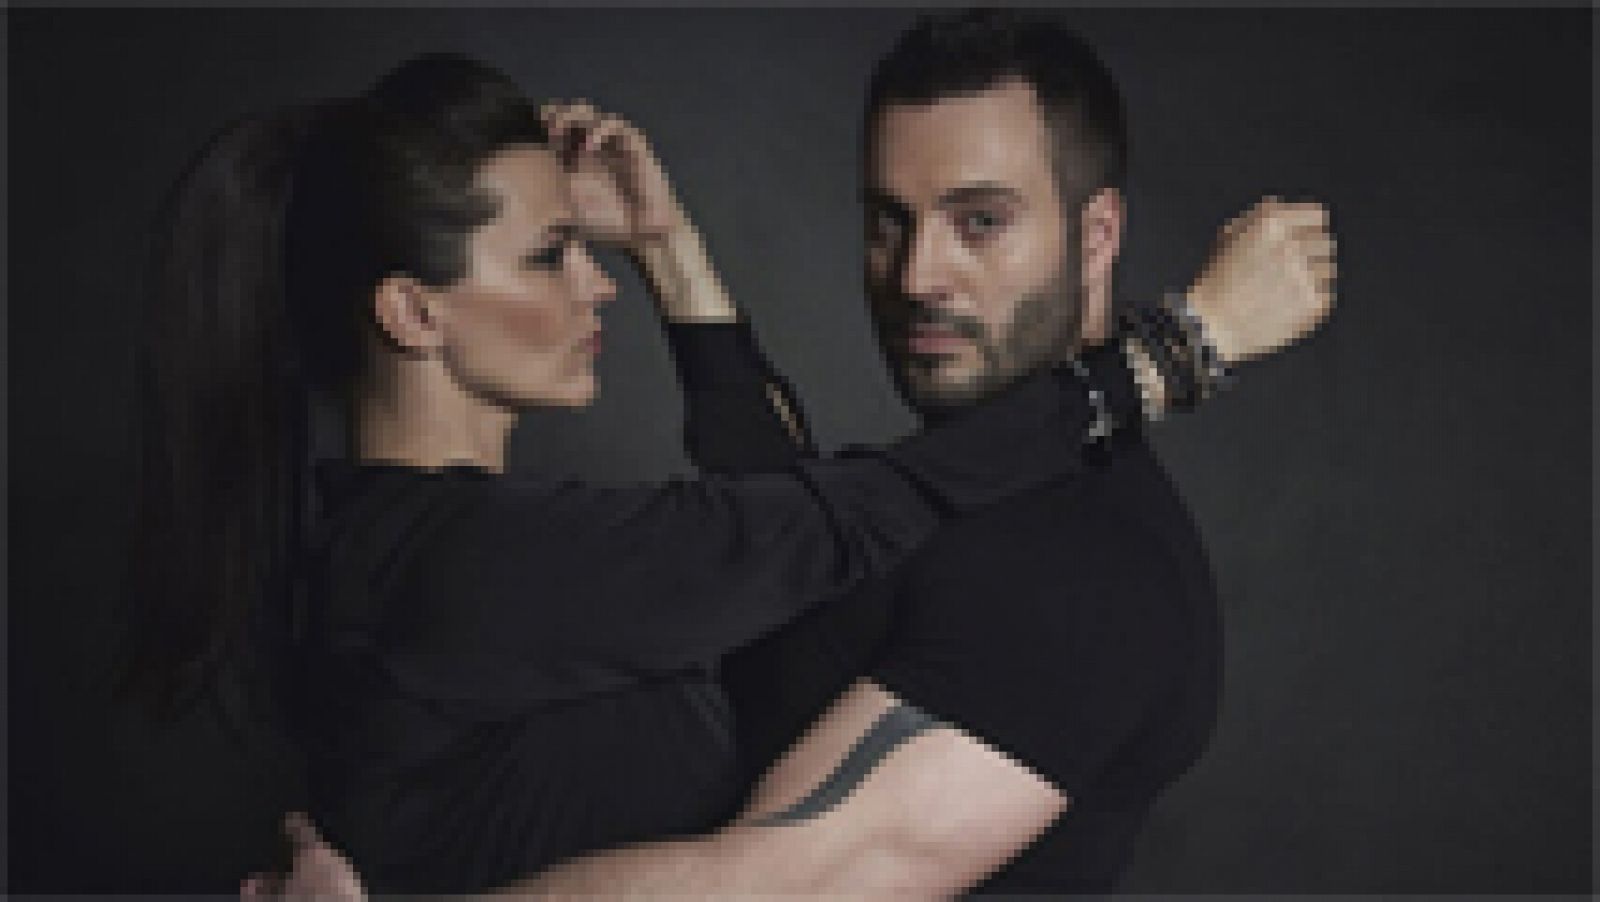 Eurovisión 2015 - República Checa: Videoclip de Marta Jandová y Václav Noid Bárta - "Hope Never Dies"